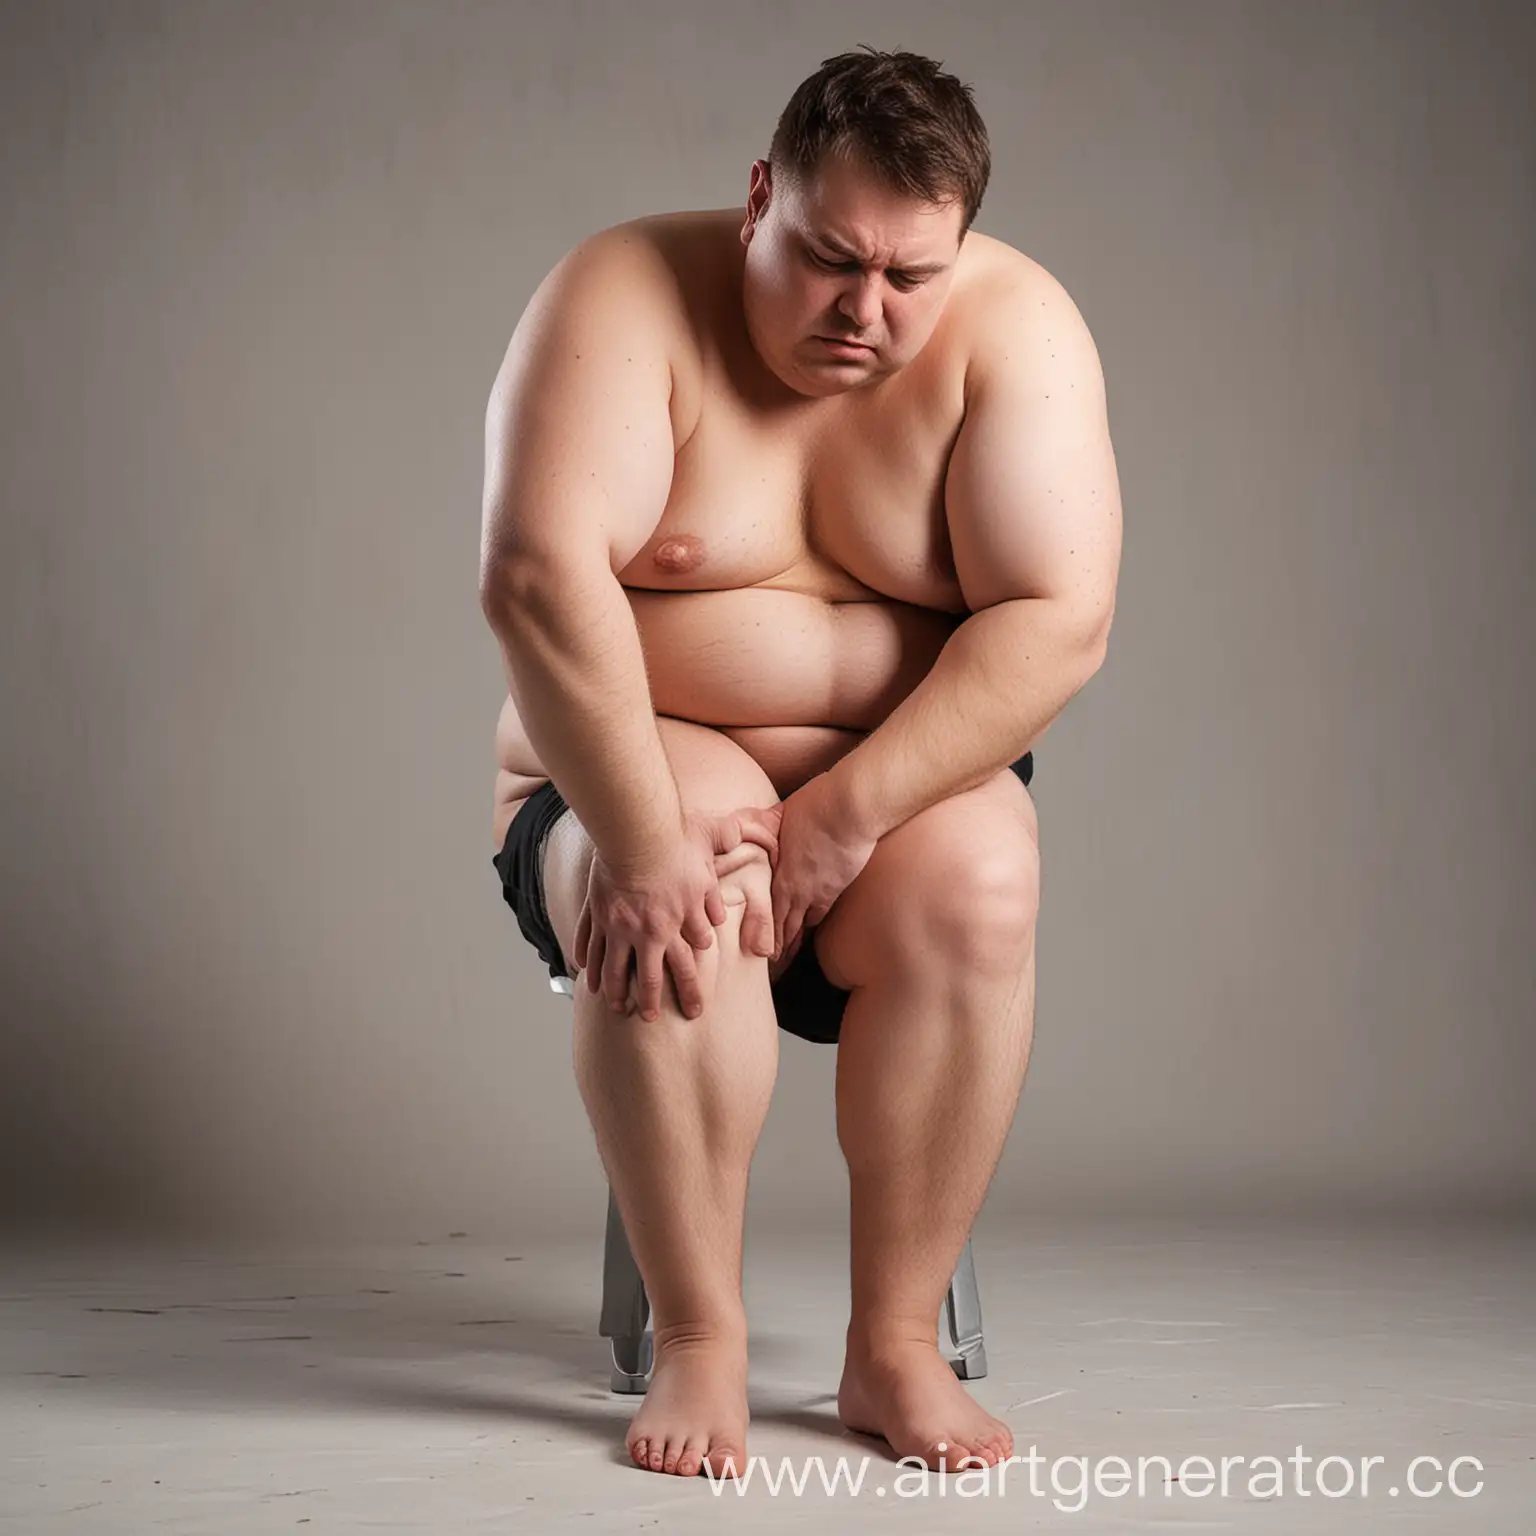 мужчина с лишним весом жалуется на боли в коленях
